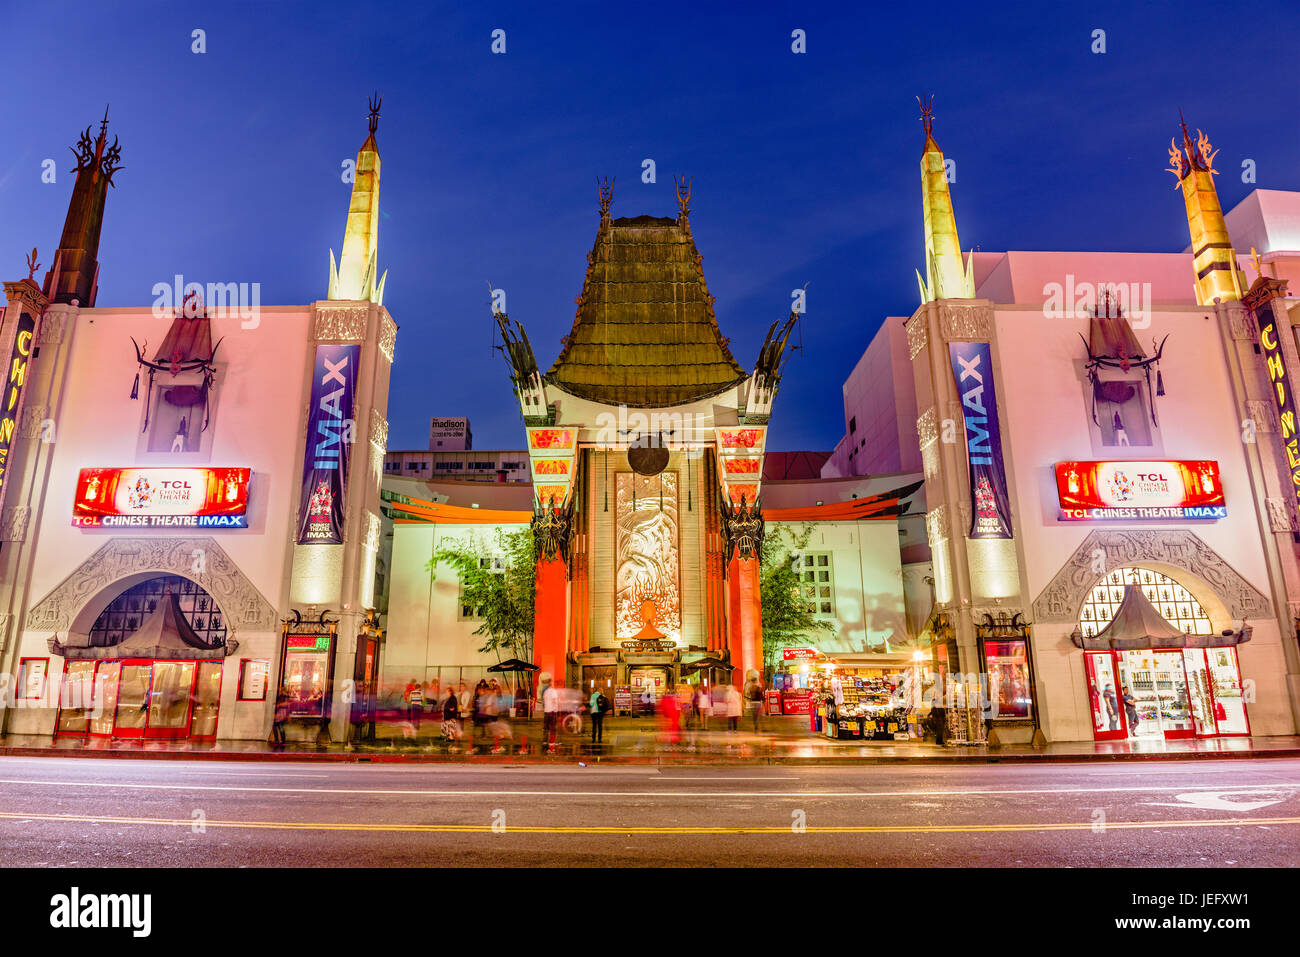 LOS ANGELES, Kalifornien - 1. März 2016: Graumans Chinese Theatre am Hollywood Boulevard. Das Theater hat zahlreiche Premieren und Veranstaltungen seit gehostet. Stockfoto